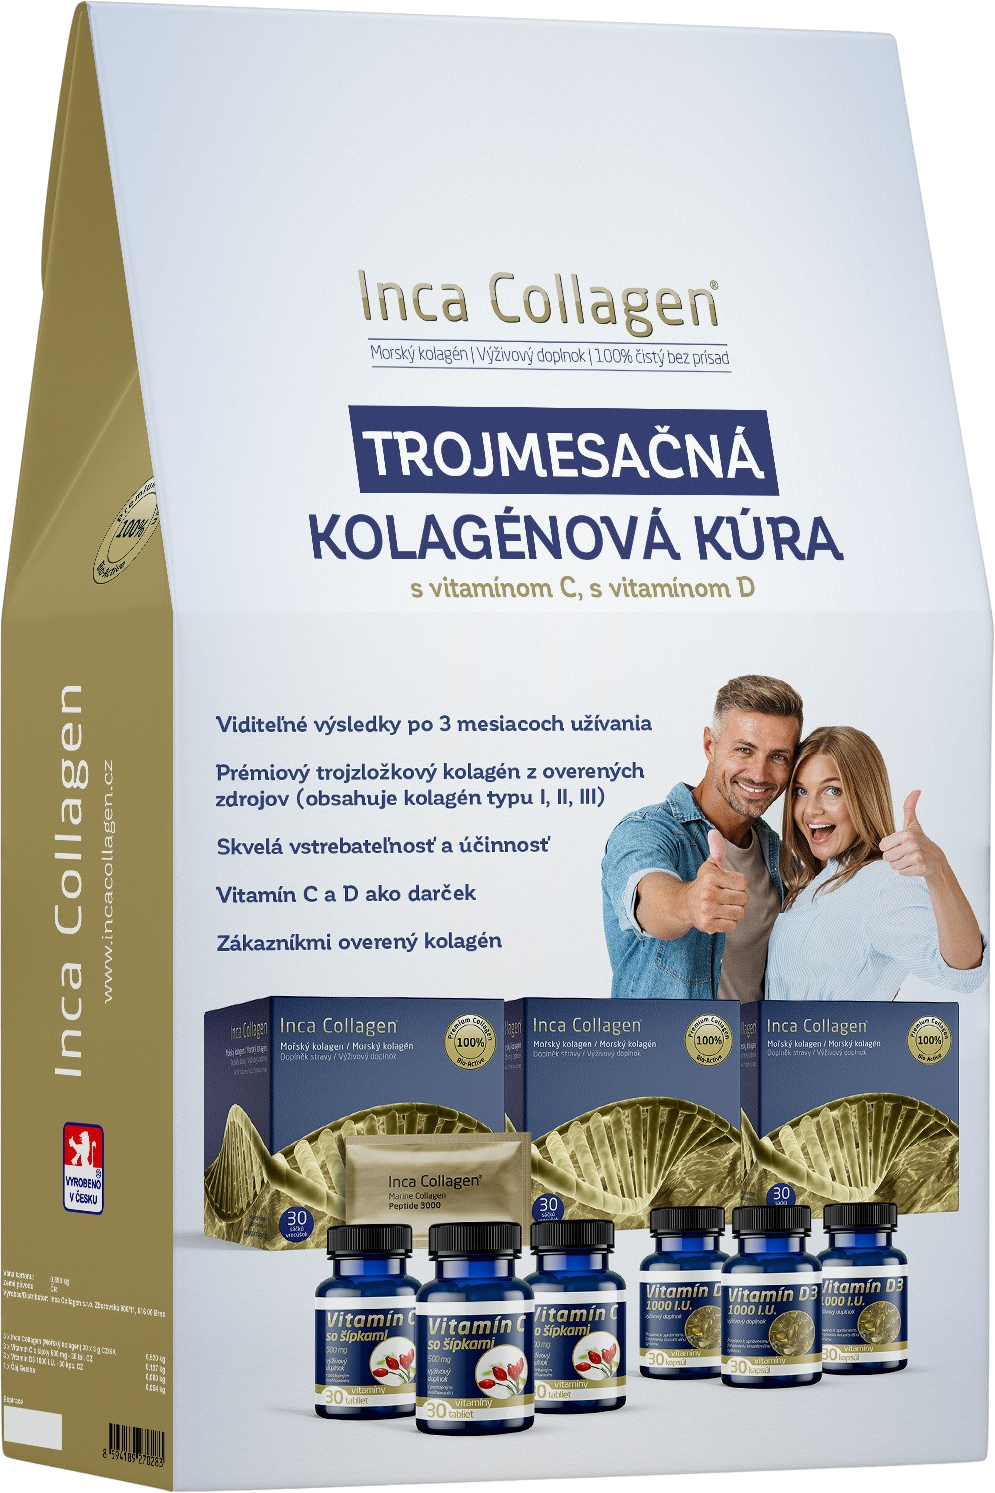 INCA COLLAGEN Három hónapos kollagénkúra 3 x 30 tasakok + AJÁNDÉK ingyenes C-vitamin és D-vitamin